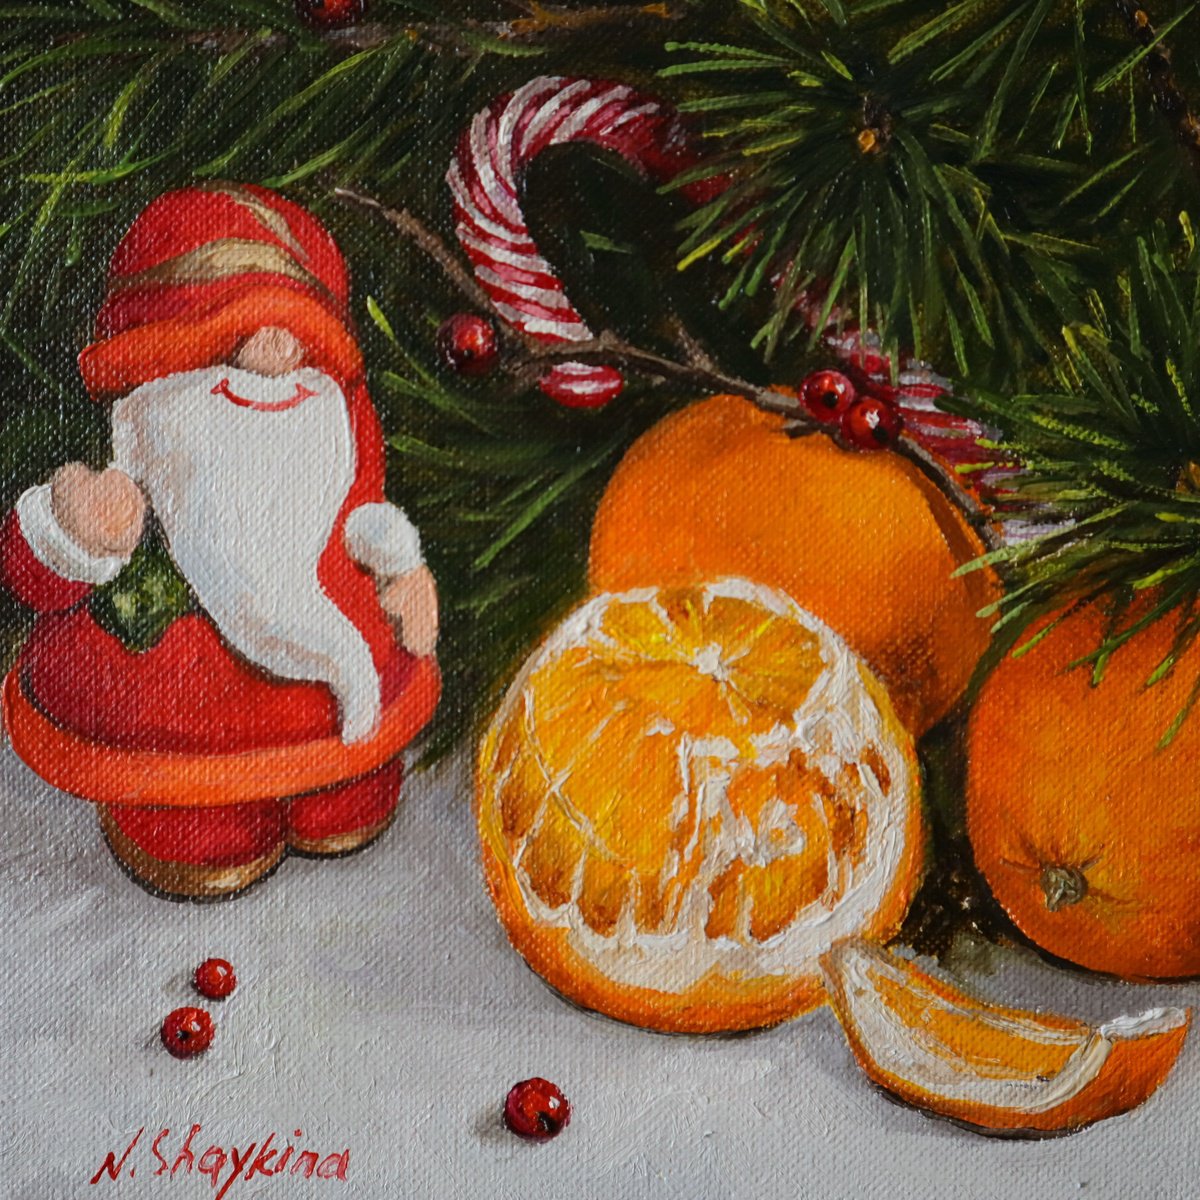 Christmas by Natalia Shaykina